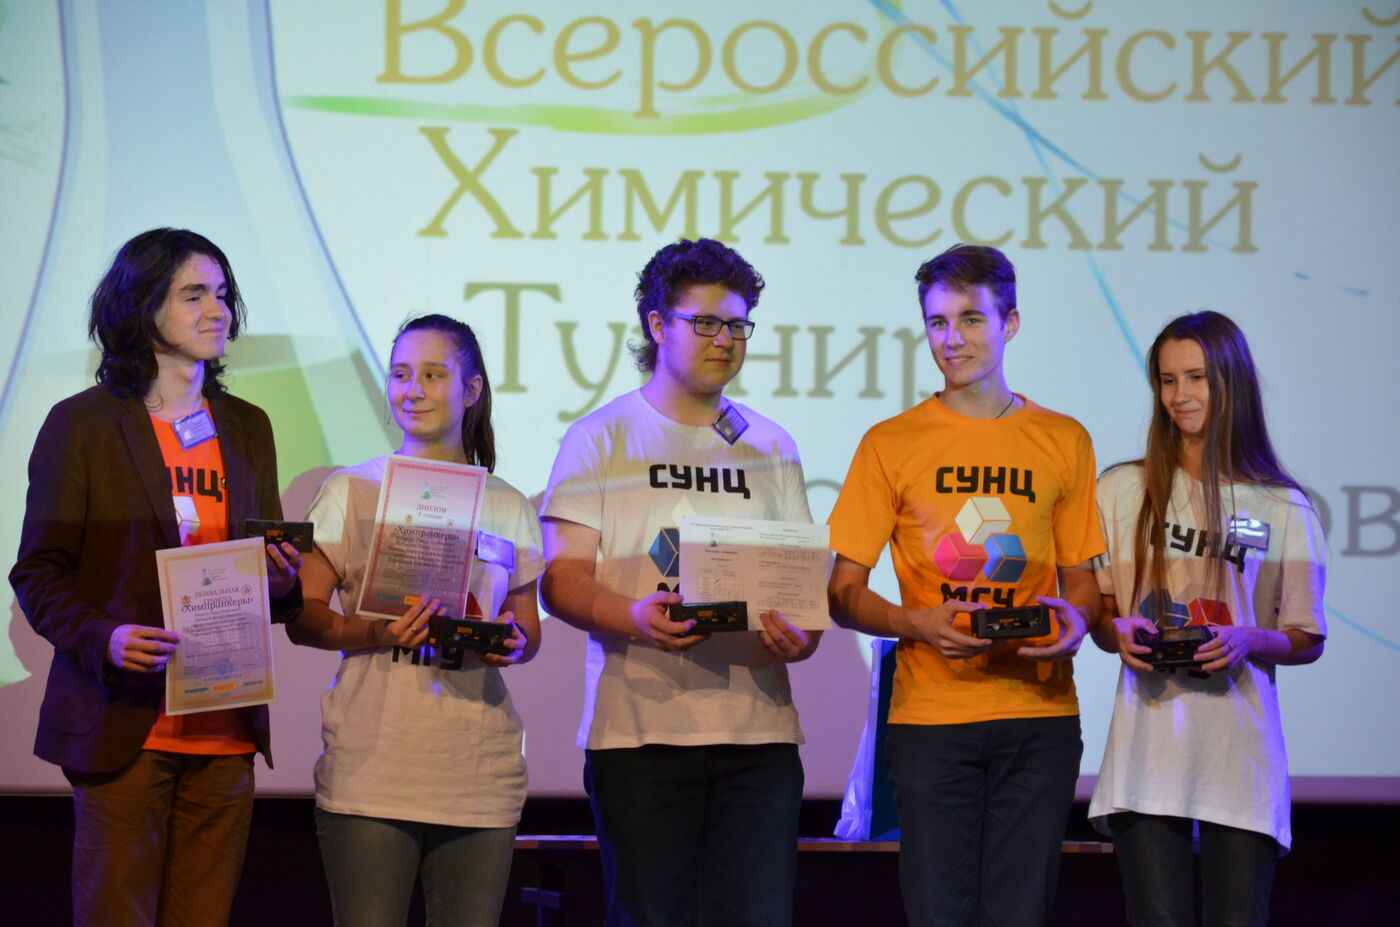 Команда из СУНЦ МГУ вернулась с победой на региональном этапе ВХТШ в Воронеже